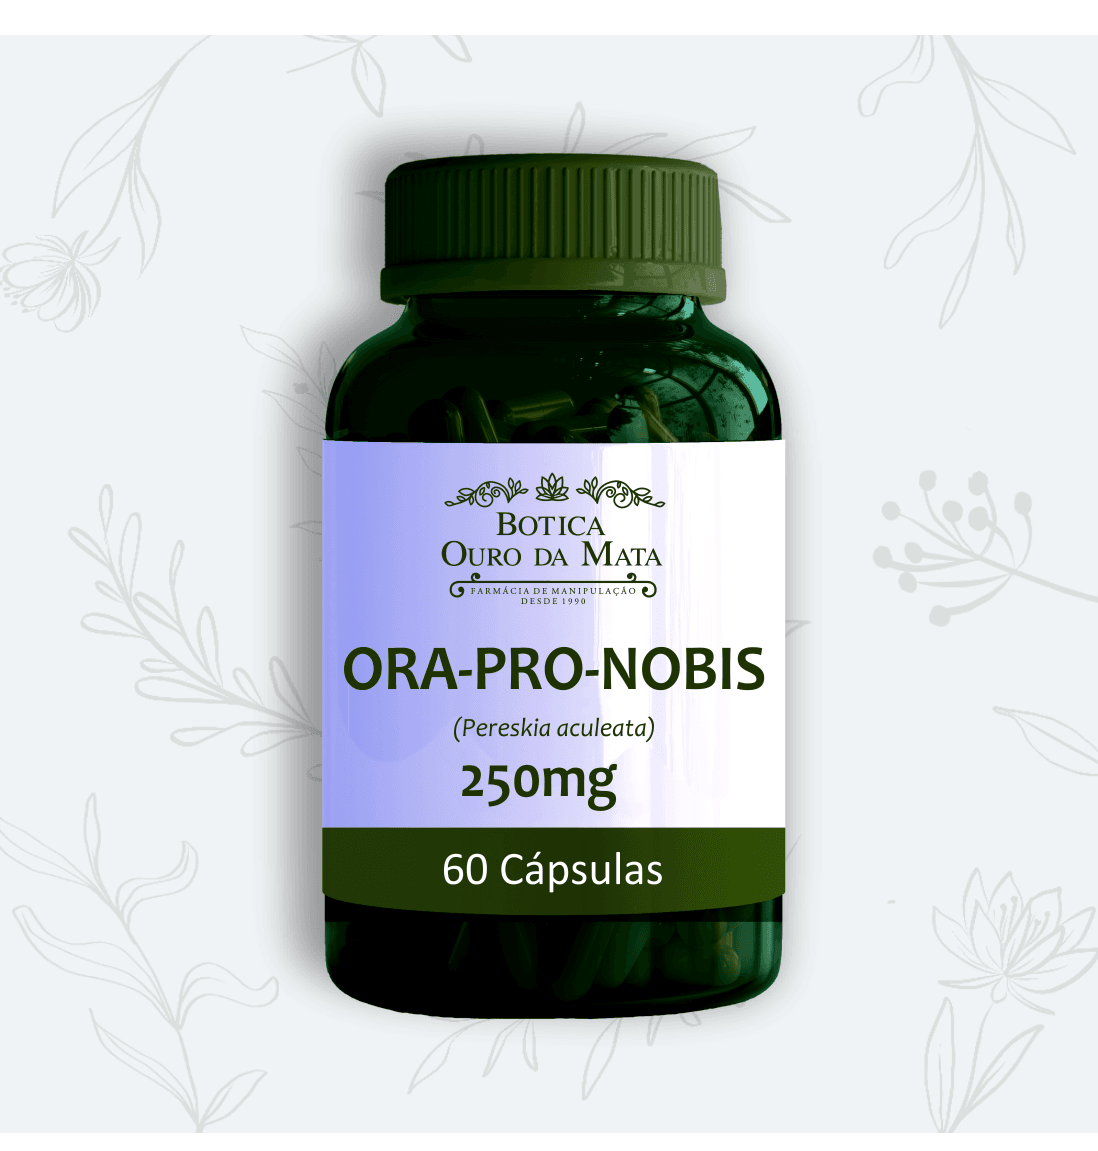 ORA-PRO-NOBIS